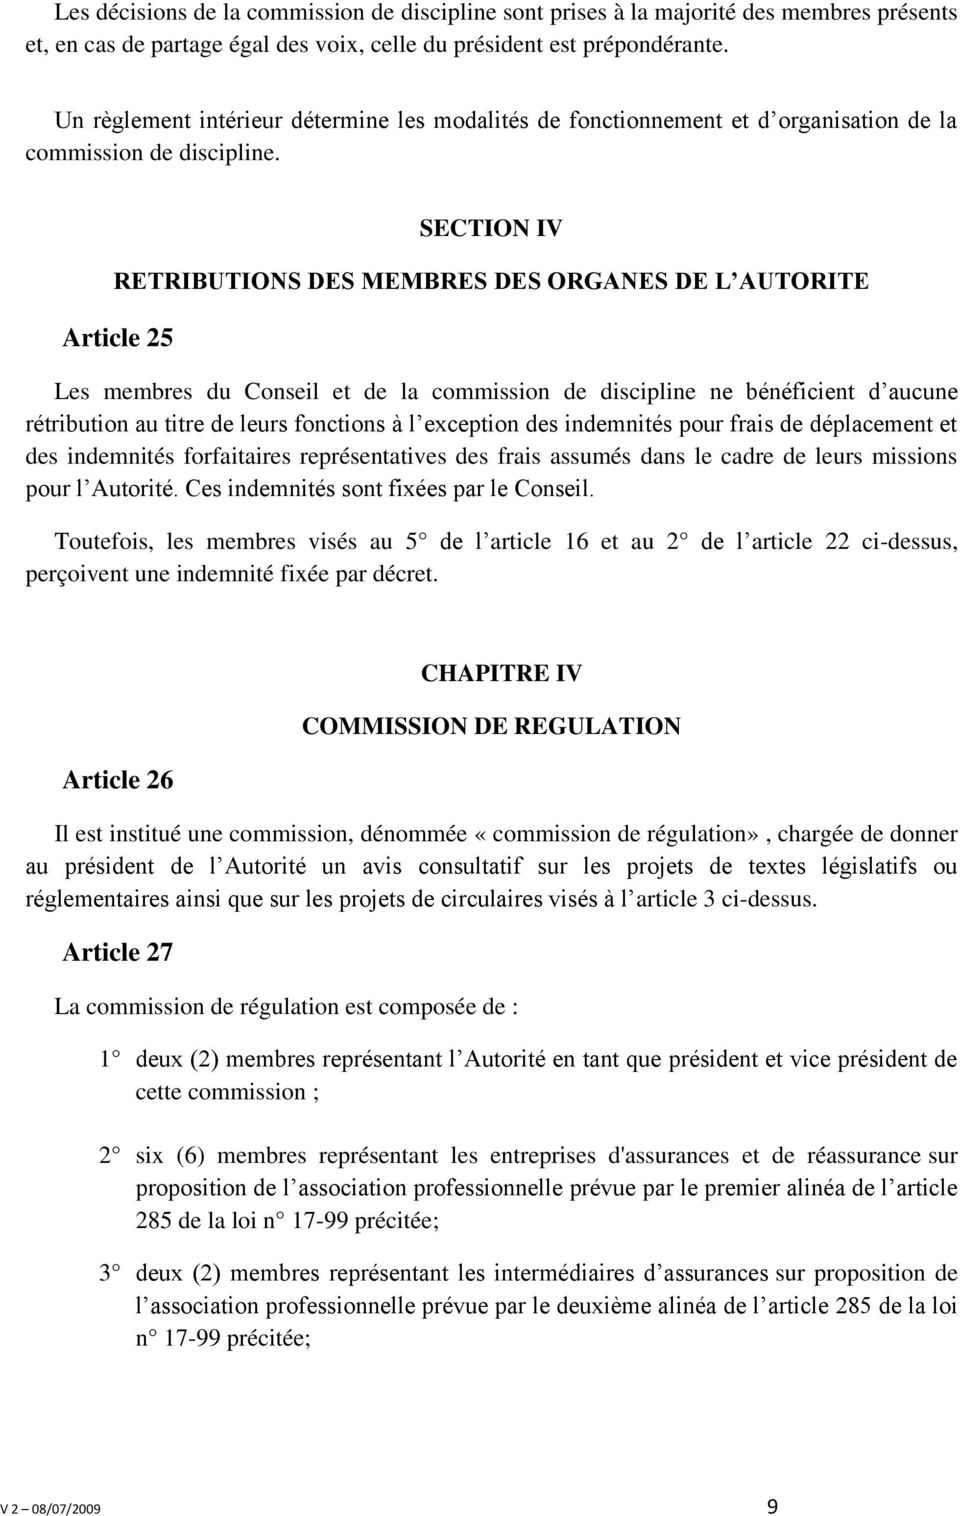 SECTION IV RETRIBUTIONS DES MEMBRES DES ORGANES DE L AUTORITE Article 25 Les membres du Conseil et de la commission de discipline ne bénéficient d aucune rétribution au titre de leurs fonctions à l